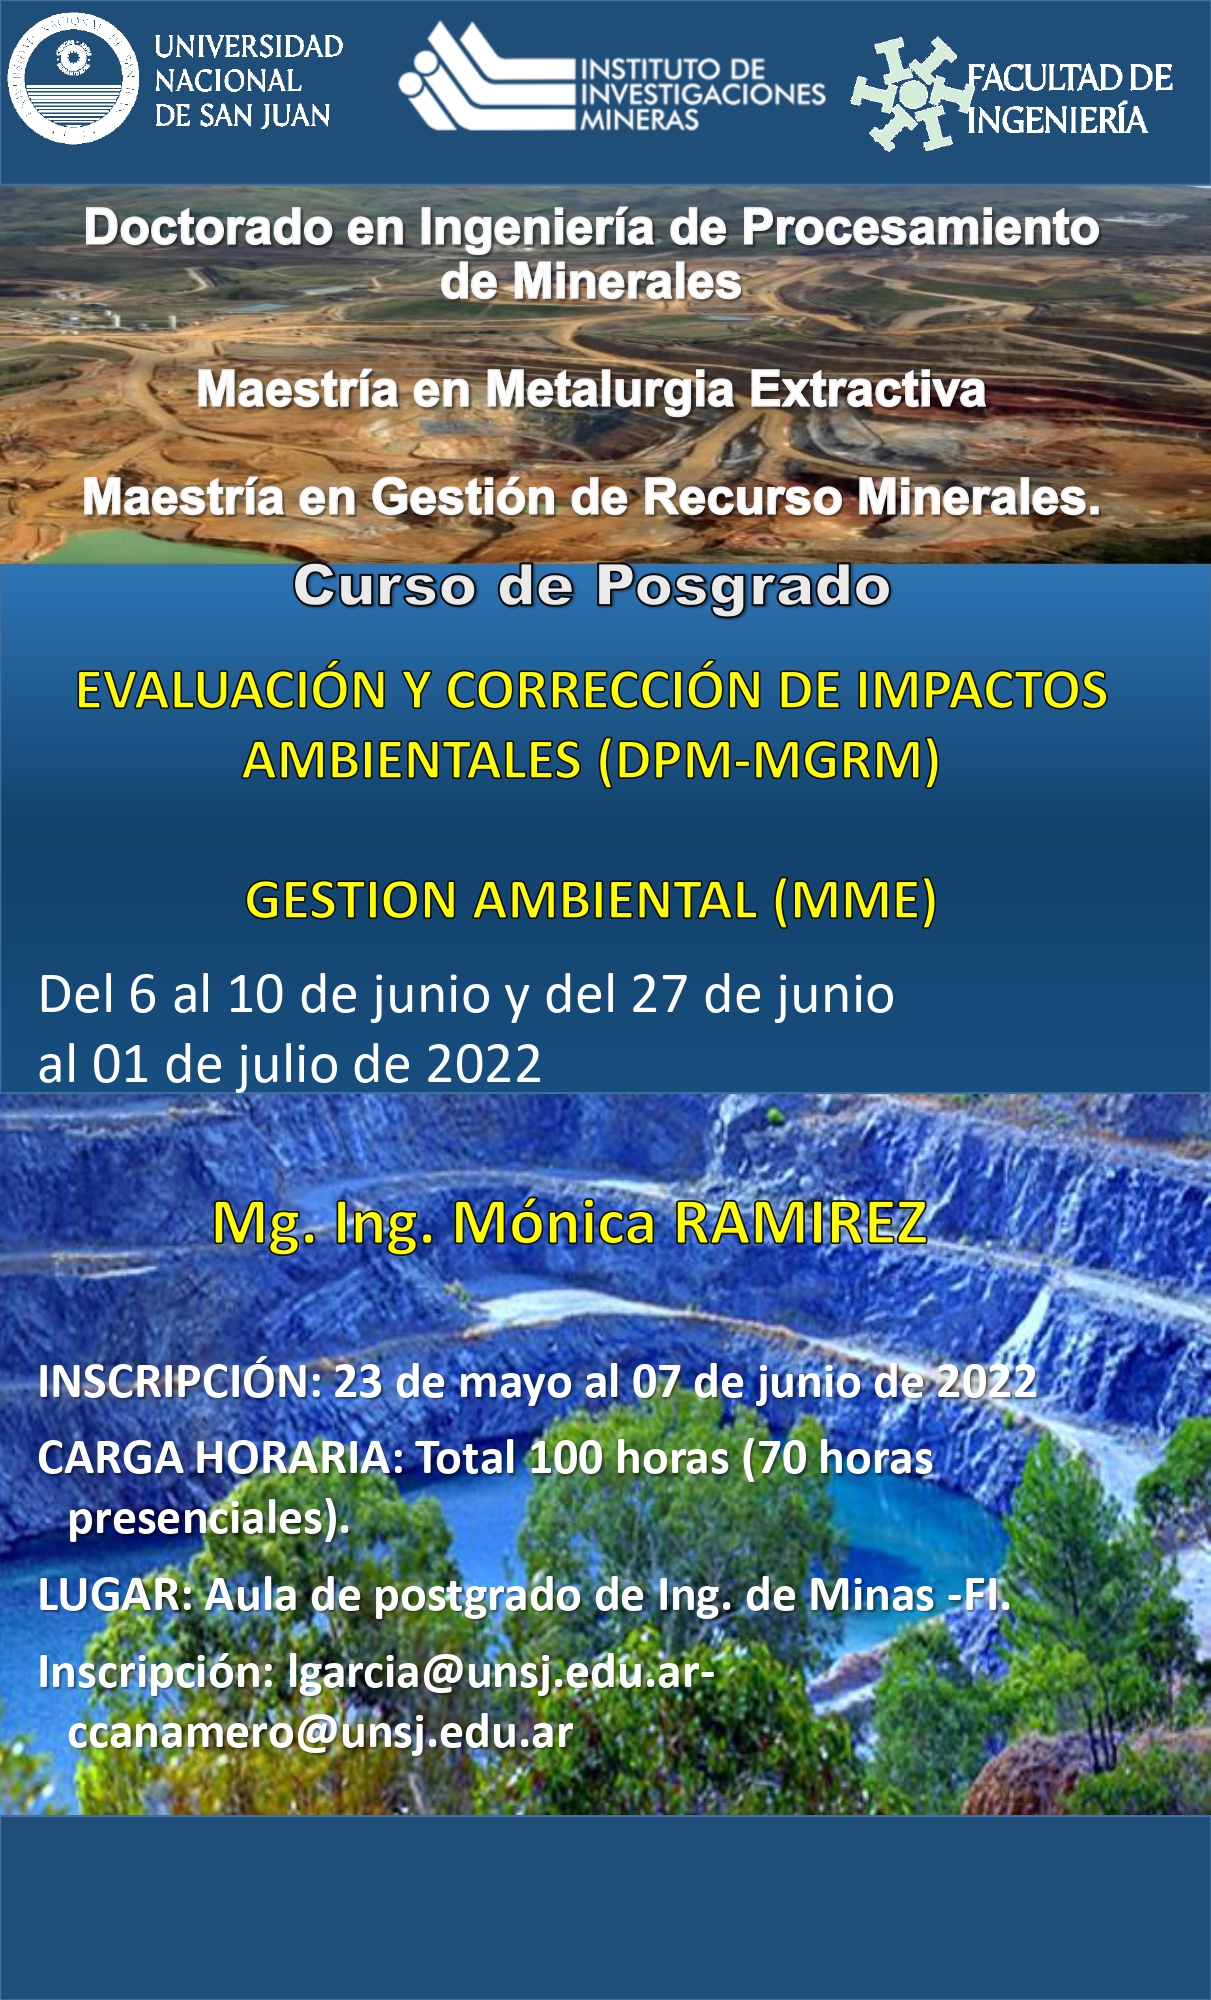 Curso de Posgrado del Doctorado en Ingeniería en Procesamiento de Minerales: “Evaluación y corrección de impactos ambientales "